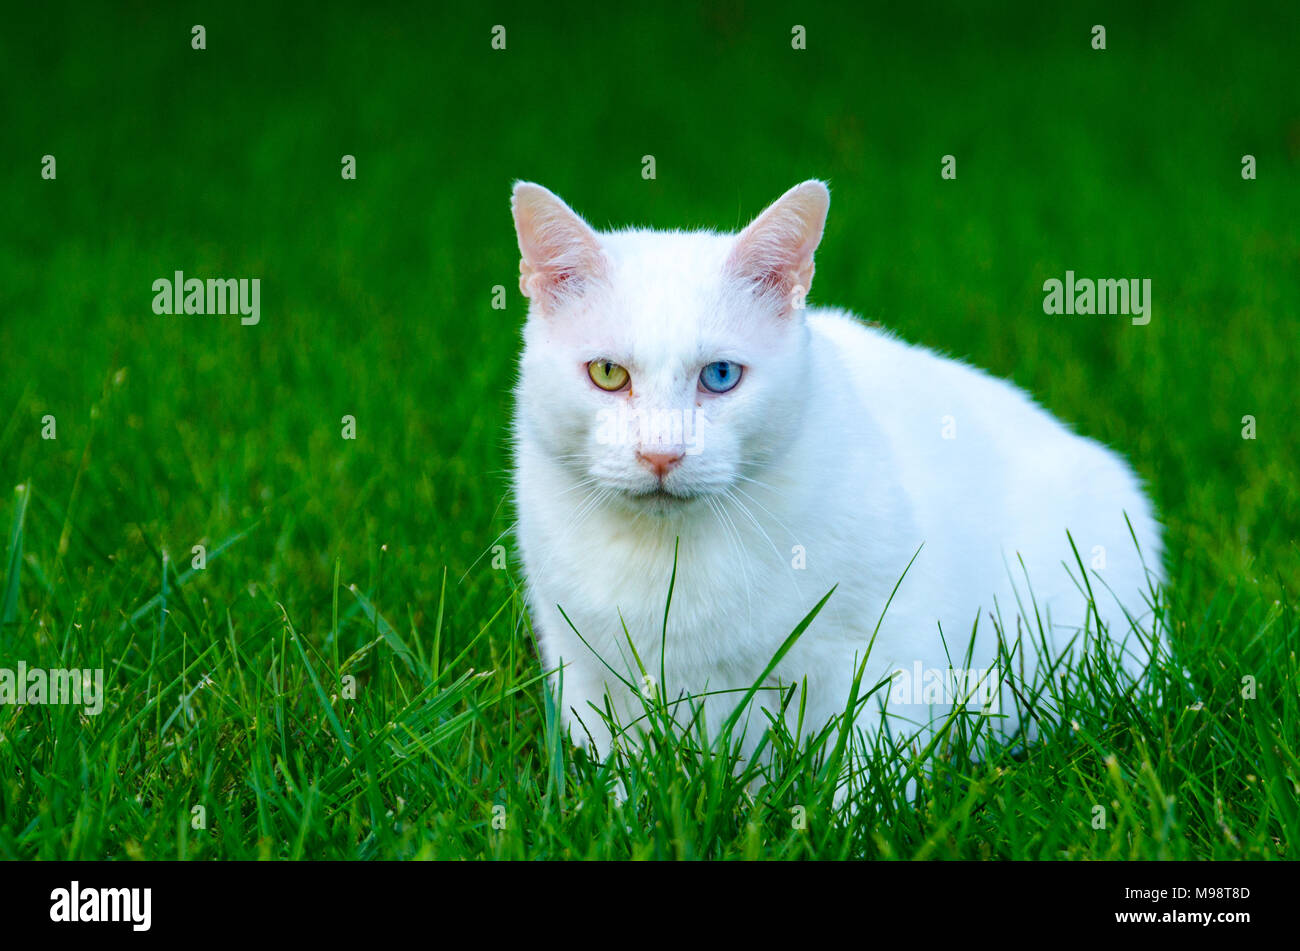 Une maison blanche chat (Felis silvestris catus), avec un œil vert et un œil bleu, est assis dans l'herbe verte à la recherche vers l'appareil photo Banque D'Images